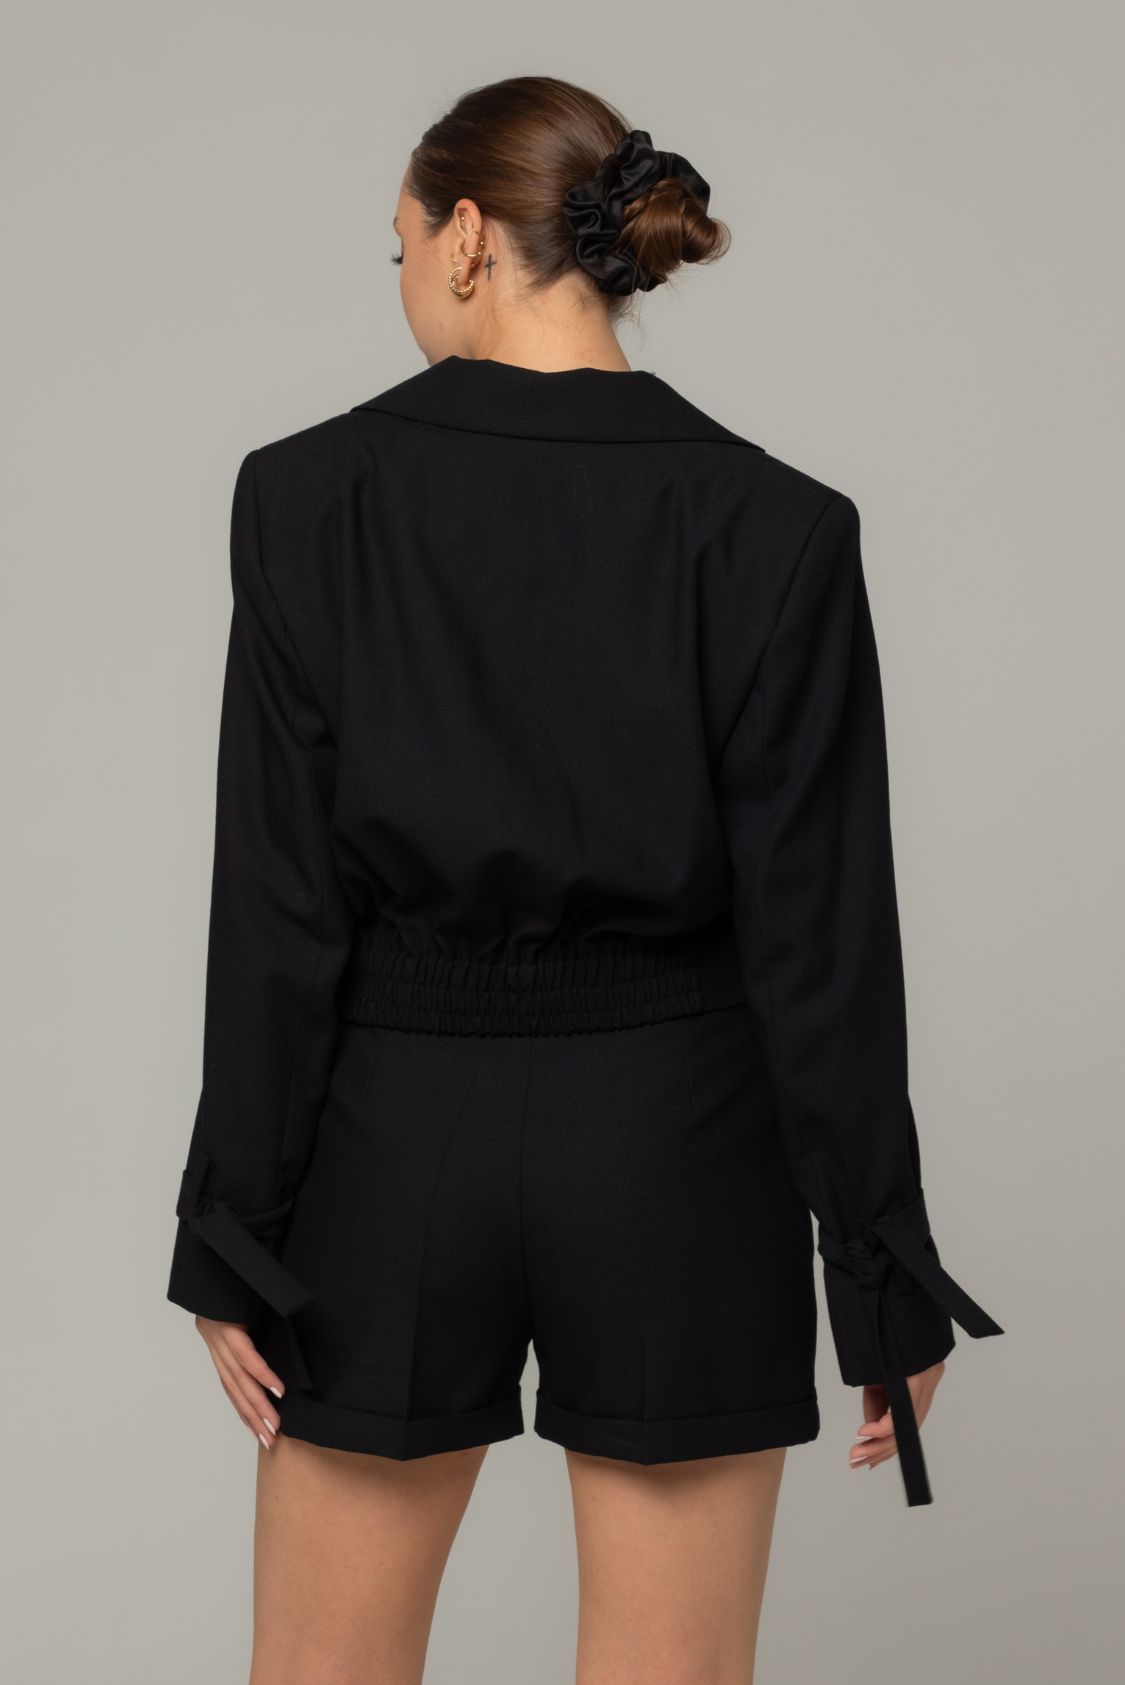 Spodnie garniturowe krótkie damskie wełniane czarne